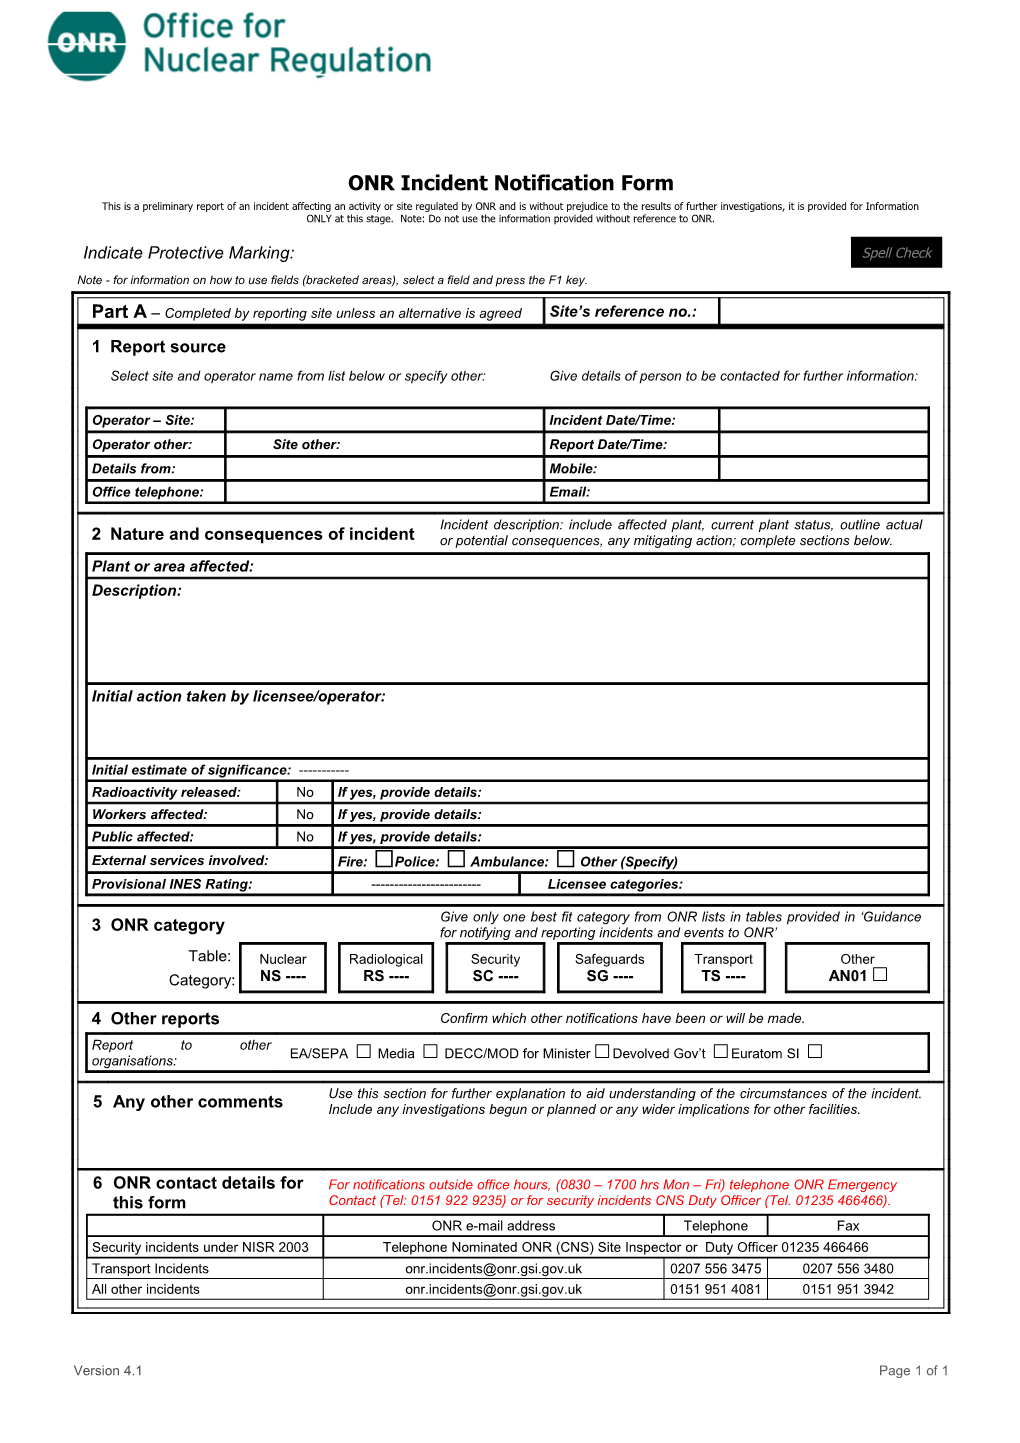 ONR Incident Notification Form V4.1